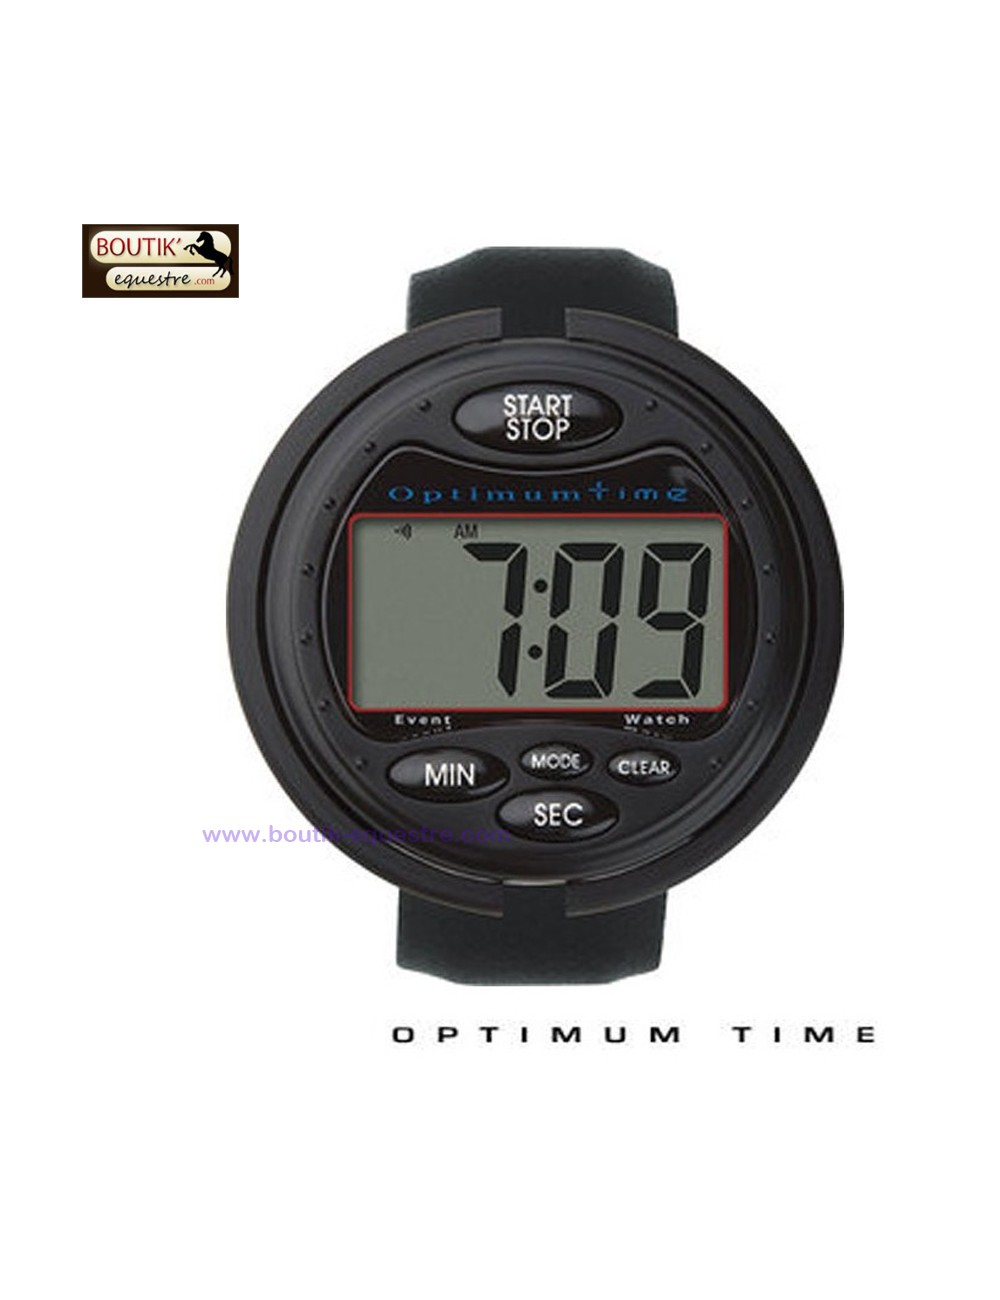 Chronometre Optimum Time